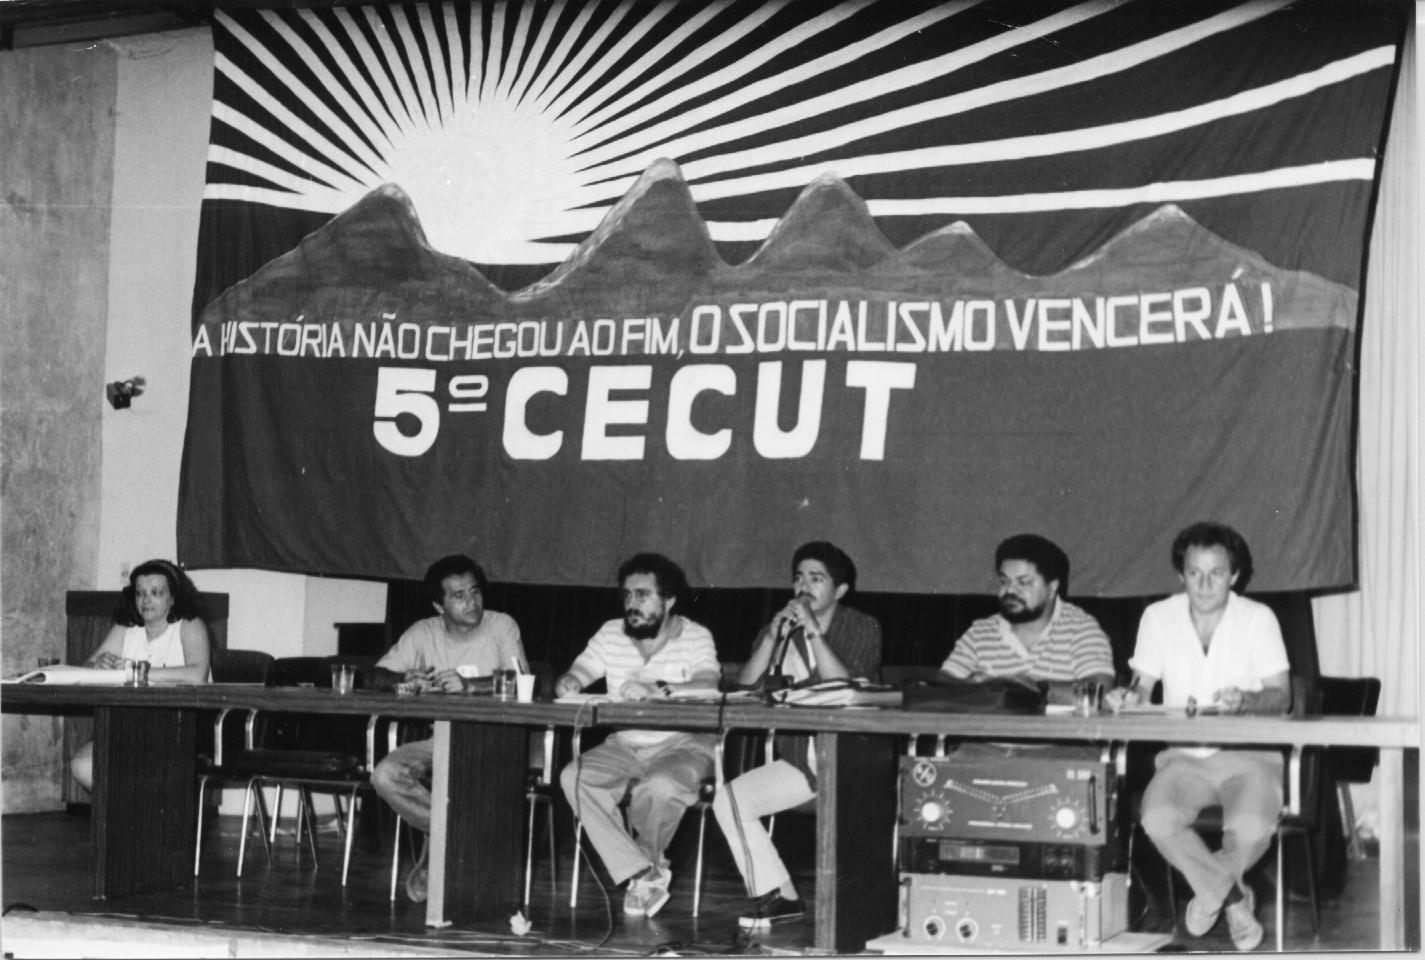 Lays na mesa do 5 Congresso Estadual da CUT. Ao seu lado, cinco homens. Na faixa, acima, está escrito. A história não chegou ao fim. O socialismo vencerá! 